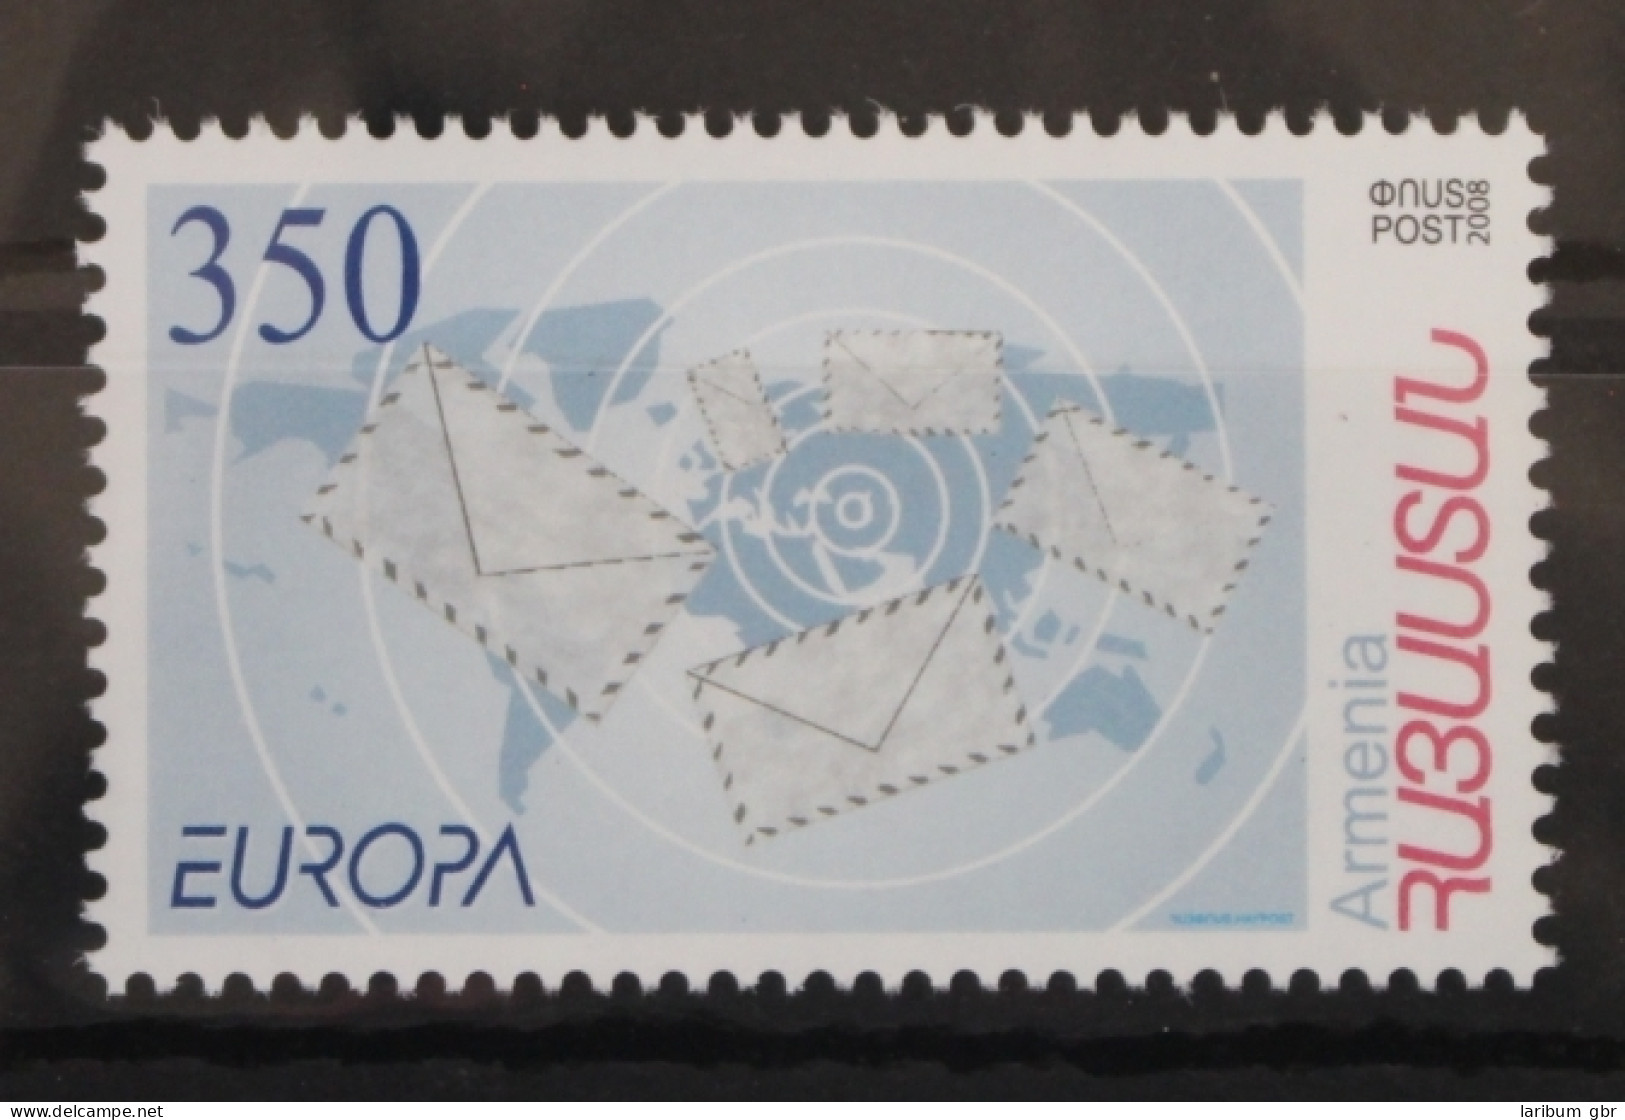 Armenien 638 Postfrisch Europa Der Brief #VT348 - Arménie